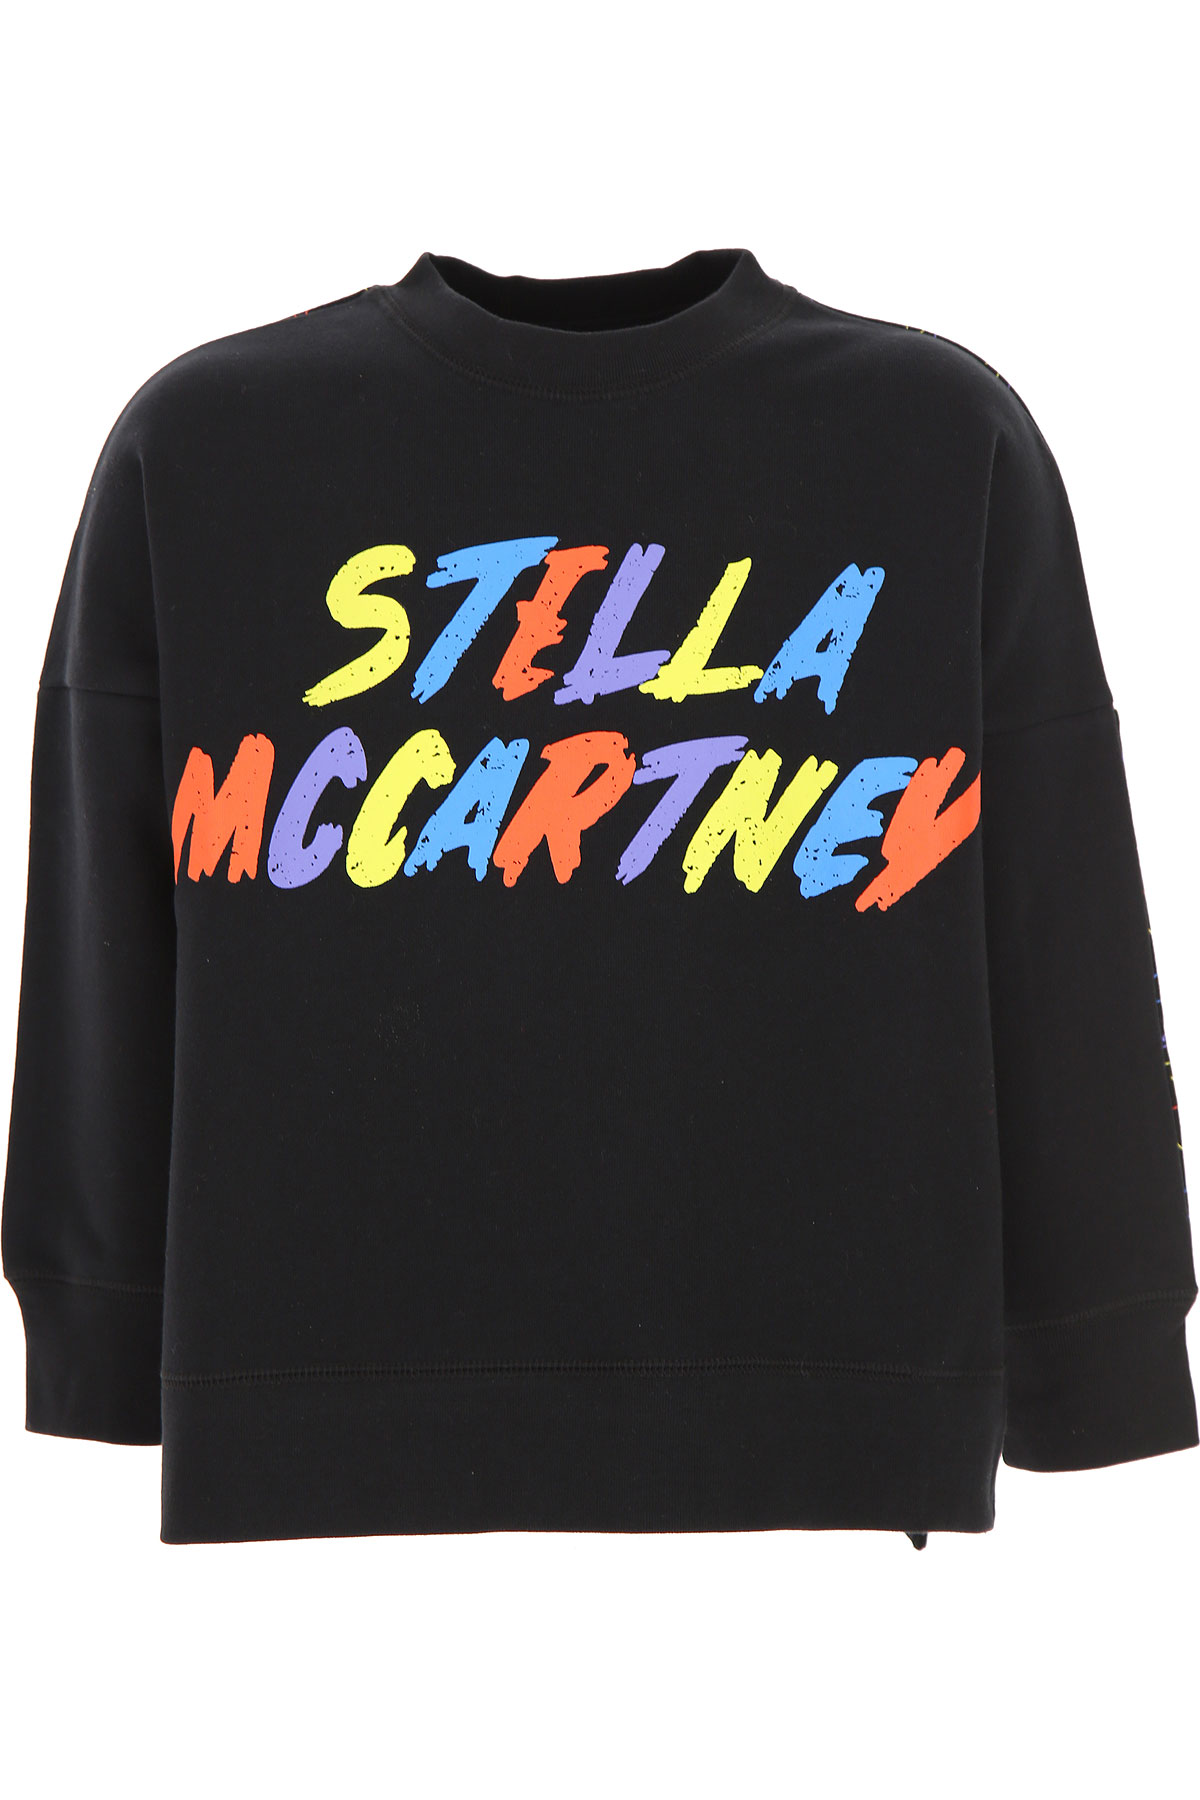 Stella McCartney Kinder Sweatshirt & Kapuzenpullover für Mädchen Günstig im Sale, Schwarz, Baumwolle, 2017, 10Y 4Y 6Y 8Y